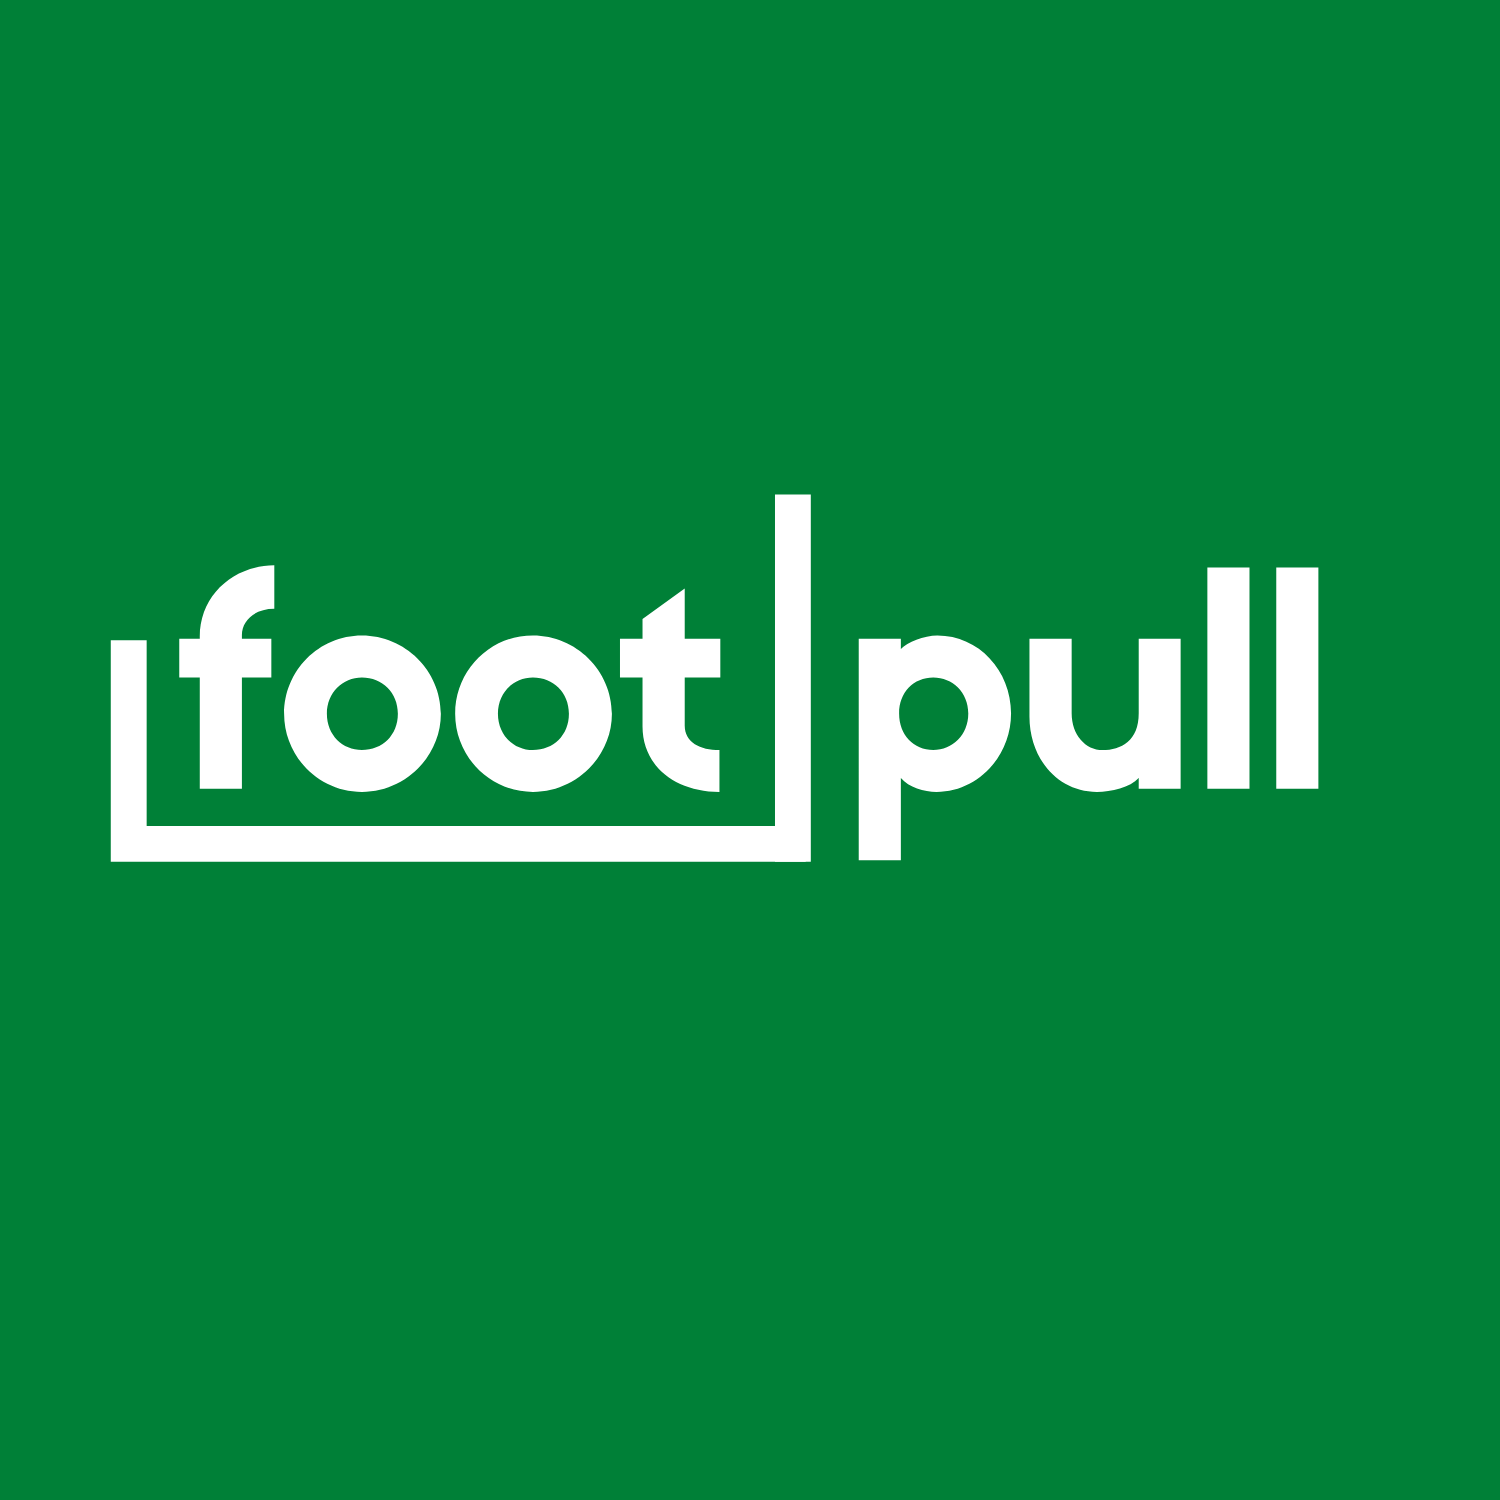 footpull